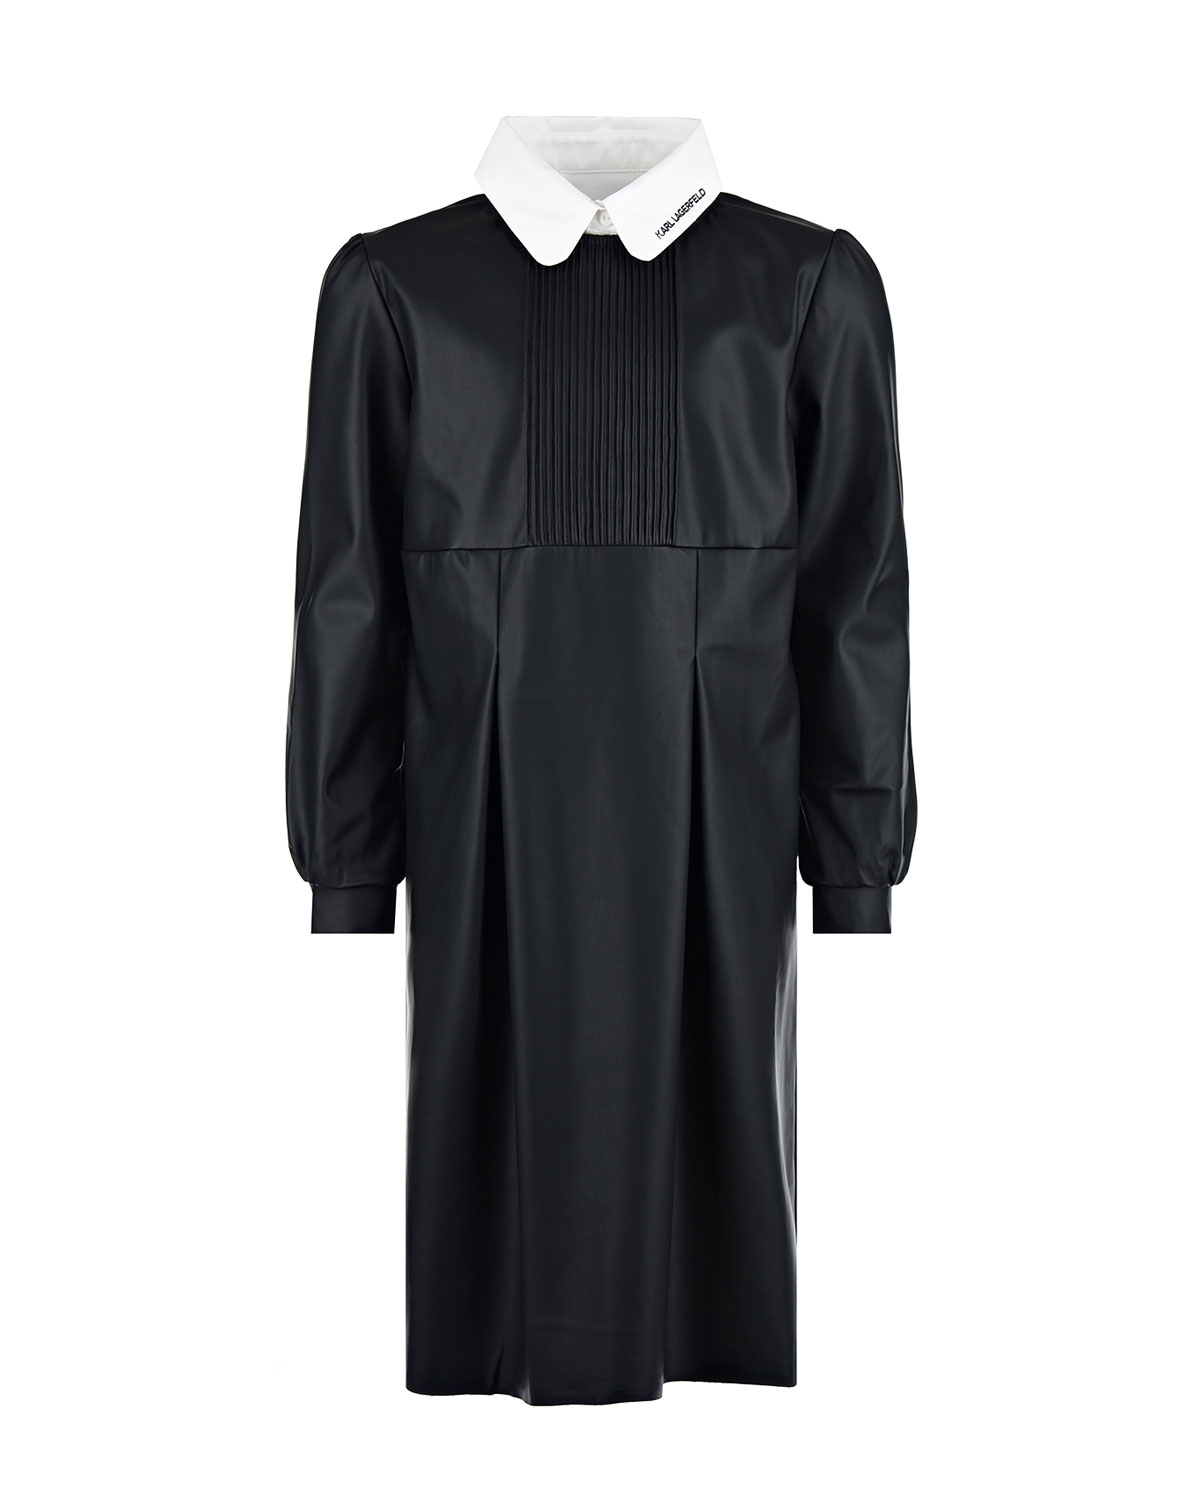 Платье из эко-кожи со съемным воротником Karl Lagerfeld kids детское, размер 140, цвет черный - фото 1